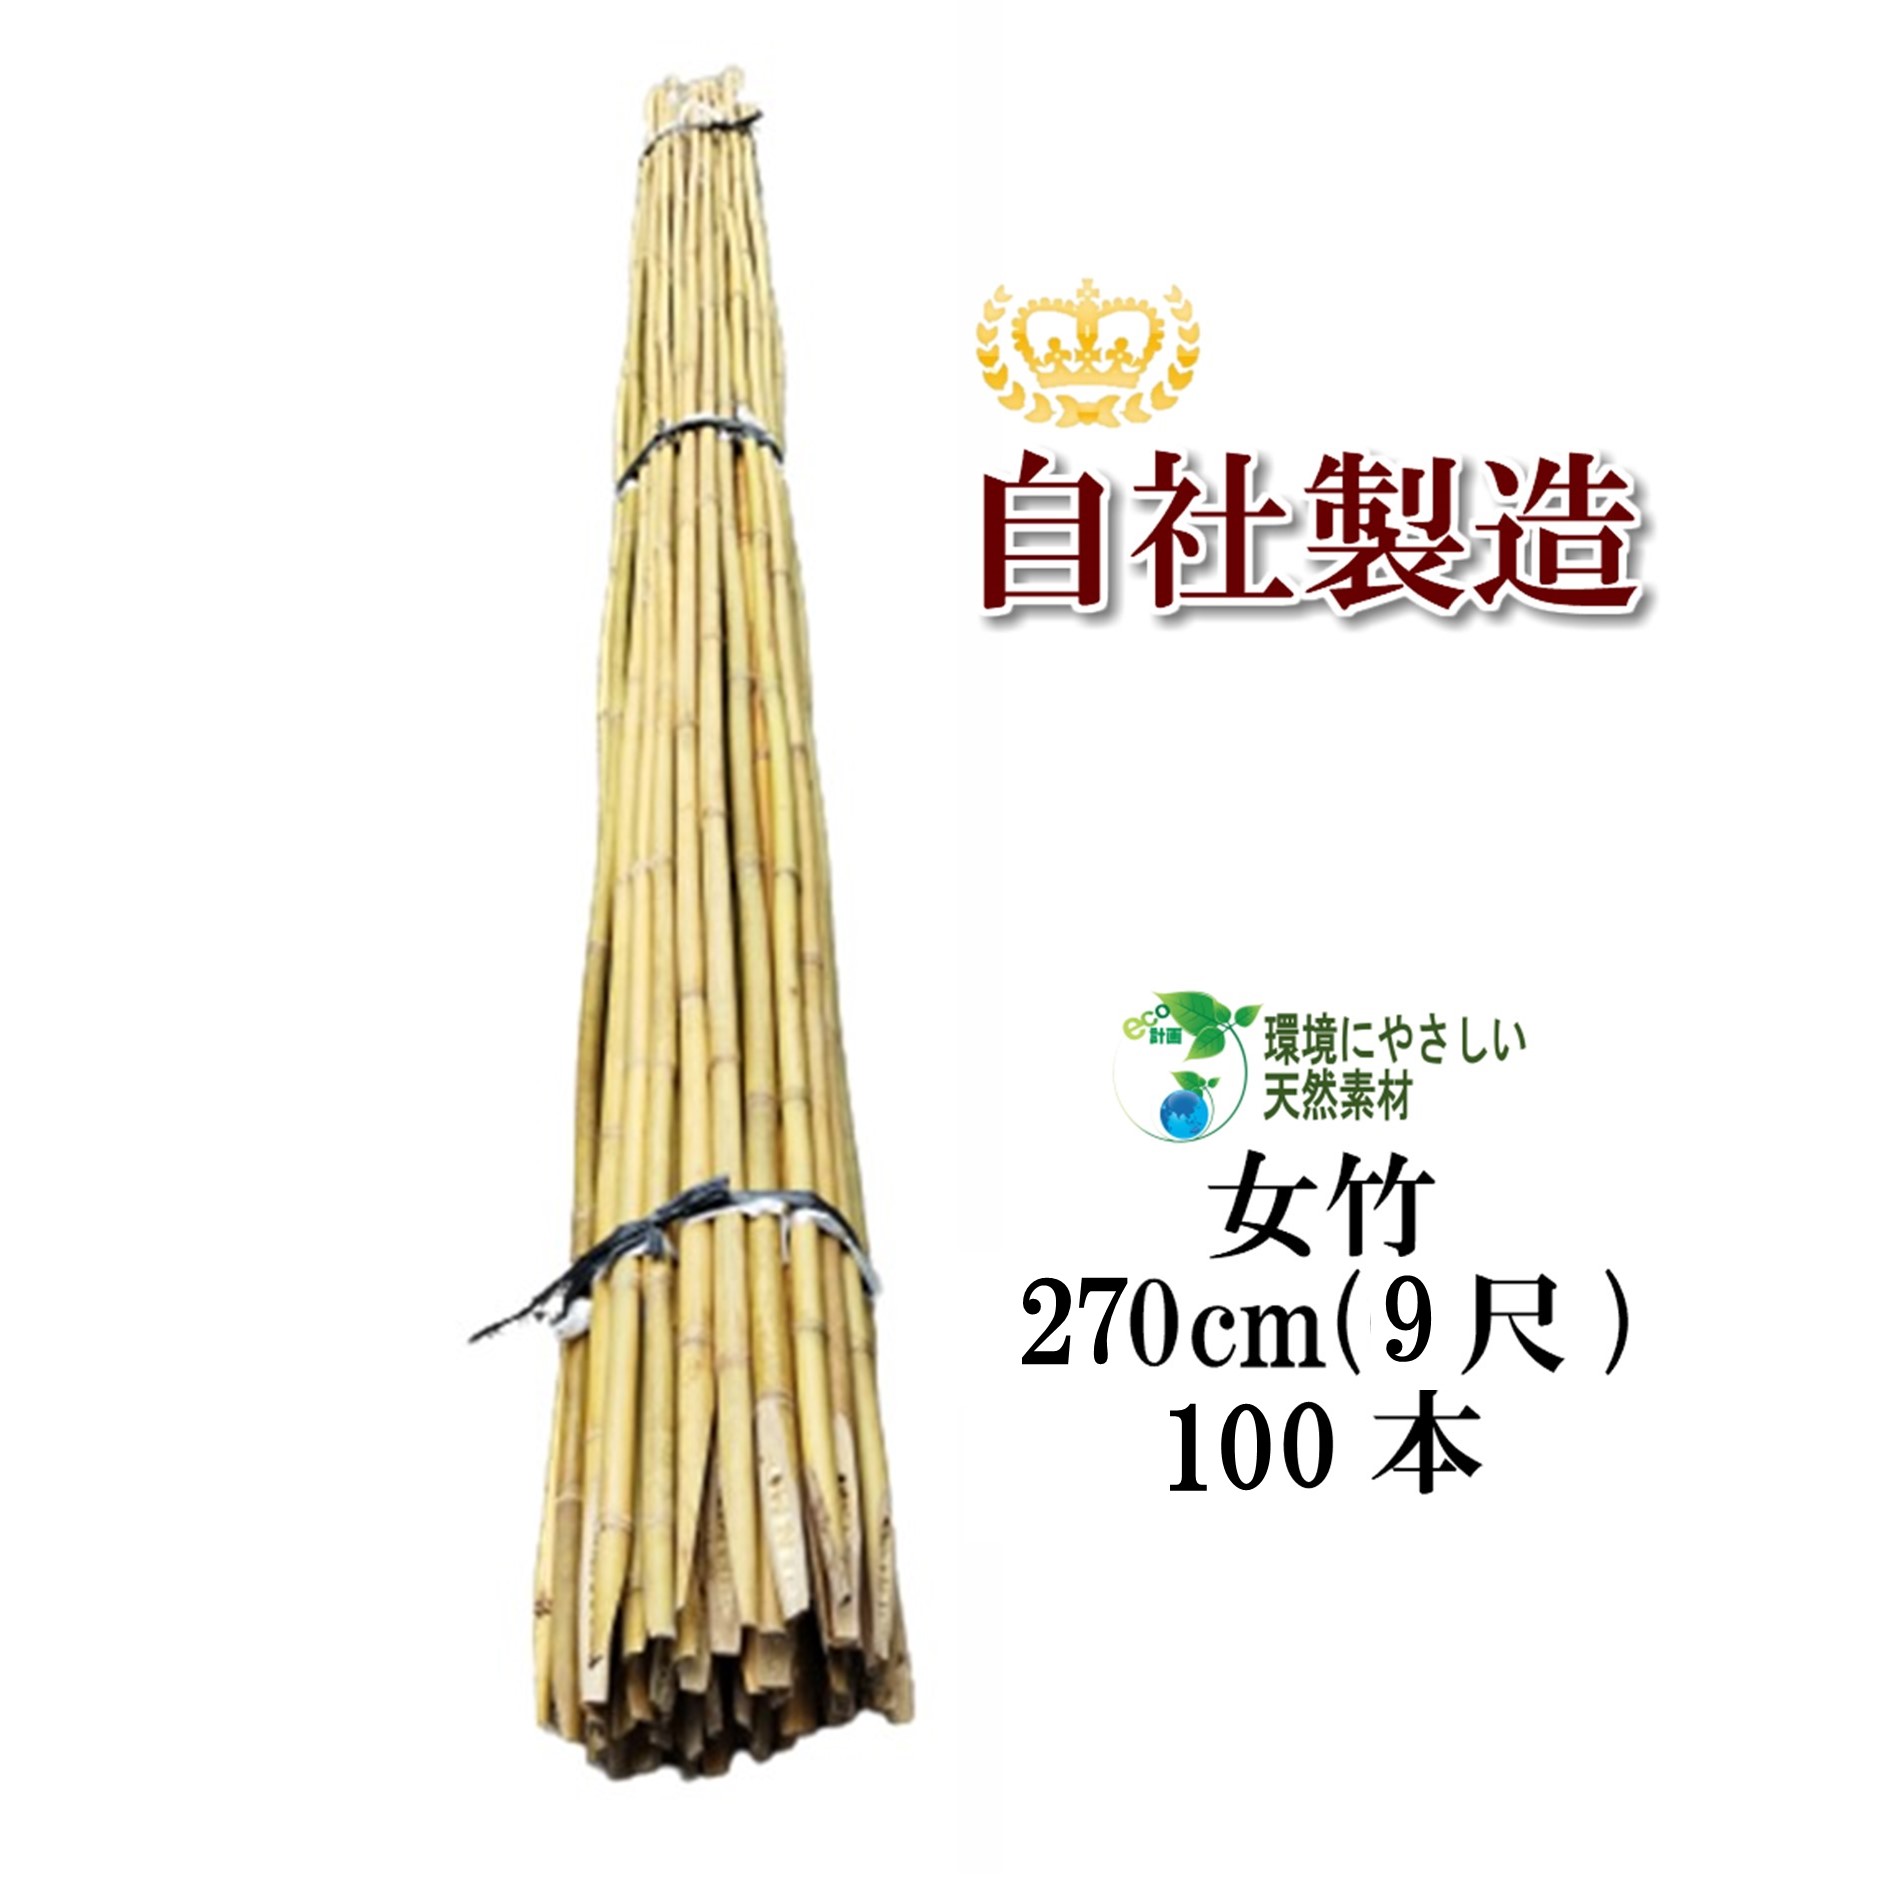 サイズ：270cm（9尺）×100本梱包 この竹はベトナム産で、SDGsの一環として弊社が現地に設立した竹加工工場で生産しております。 女竹は、しなやかで粘り強く丈夫な竹です。 土に挿しやすいよう先端を斜めにカットしています。 建築用（建築資材、エクステリアなど）や造園用（雪吊支柱など）として幅広くご利用いただけます。 また、農業用（園芸資材）としてもご使用いただけます。 明細書は発行しておりませんのでご了承ください。 大変申し訳ございませんが、配送業者の都合上、沖縄・離島への配送は承っておりません。 また代金引換は不可、時間指定は午前または午後の区分となりますのでご了承くださいませ。■■■■■　女竹商品一覧　■■■■■ ●女竹60cm（2尺）20本　 50本　 100本　 500本　 1000本 ●女竹90cm（3尺）20本　 50本　 100本　 500本　 1000本 ●女竹120cm（4尺）20本　 50本　 100本　 500本　 1000本 ●女竹150cm（5尺）10本　 50本　 100本　 500本　 1000本 ●女竹180cm（6尺）5本　 10本　 50本　 100本　 500本　 1000本 ●女竹210cm（7尺）5本　 10本　 50本　 100本 ●女竹240cm（8尺）5本　 10本　 50本　 100本 ●女竹270cm（9尺）5本　 10本　 50本　 100本 ●女竹300cm（10尺・細）5本　 10本　 50本 ●女竹300cm（10尺・中）5本　 10本　 50本 ●女竹300cm（10尺・太）5本　 10本　 50本 ■■■■■■■■■■■■■■■■■■